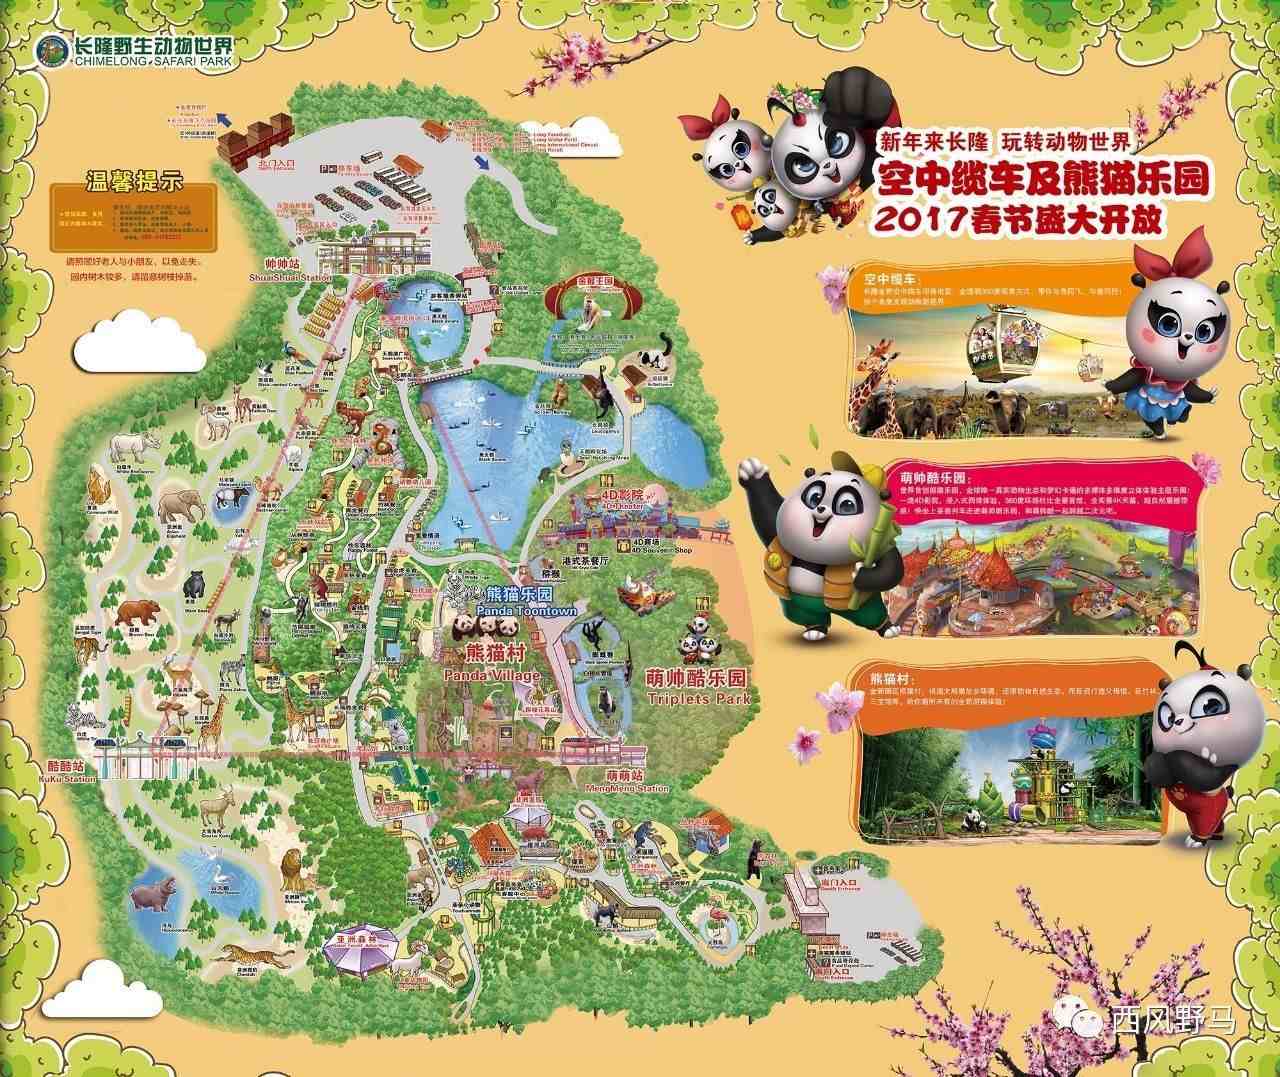 广州番禺长隆野生动物园，完全自游手册指南，不用跟团找导游